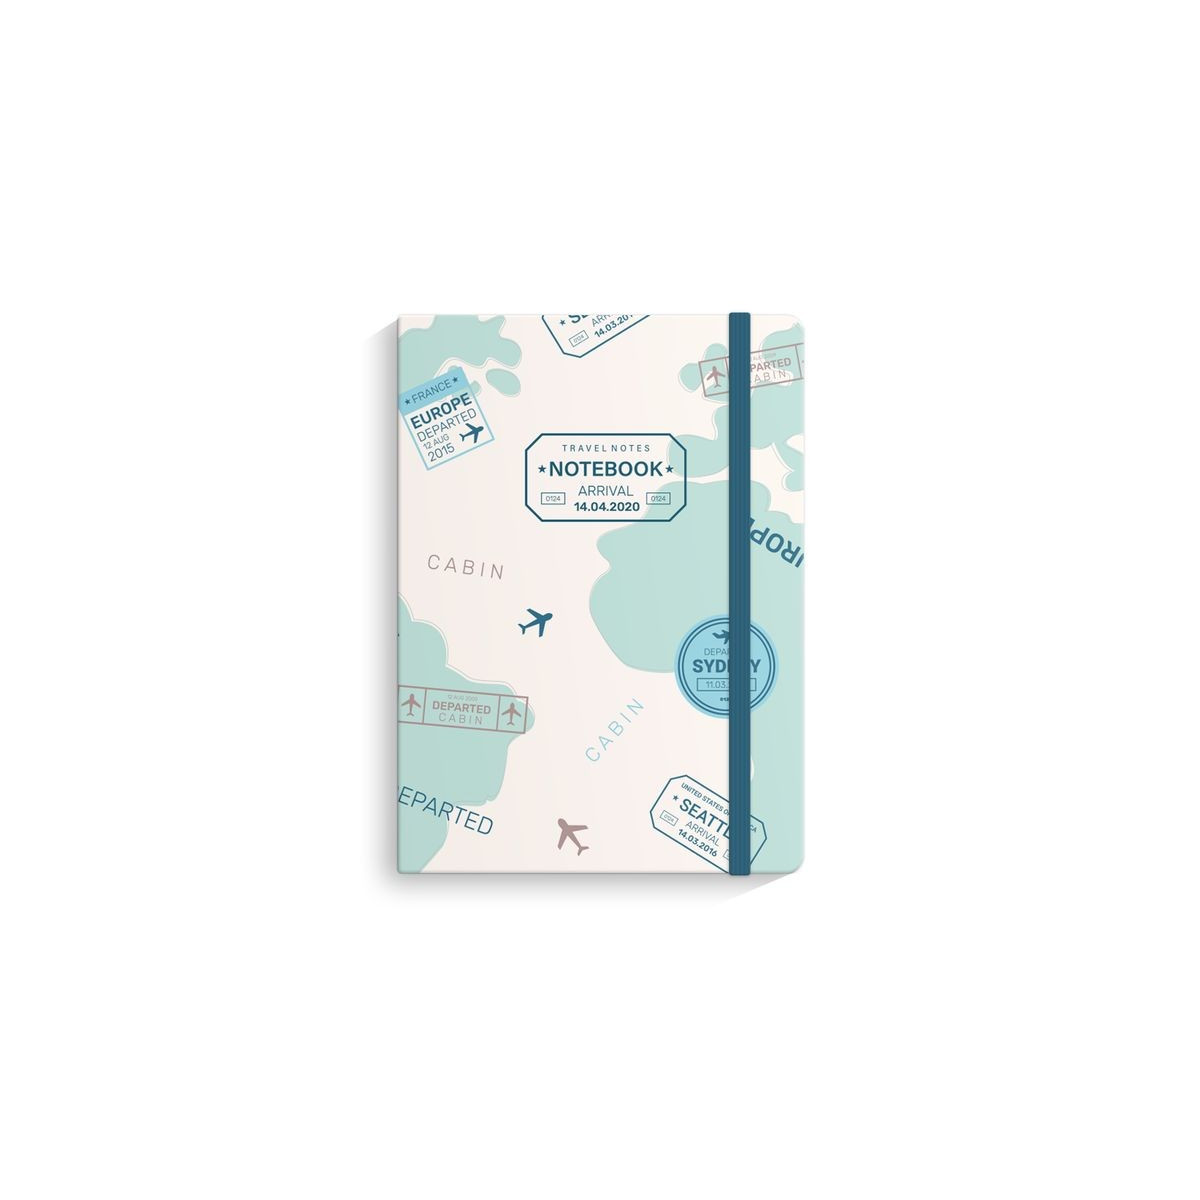 Notebook com viagem de borracha